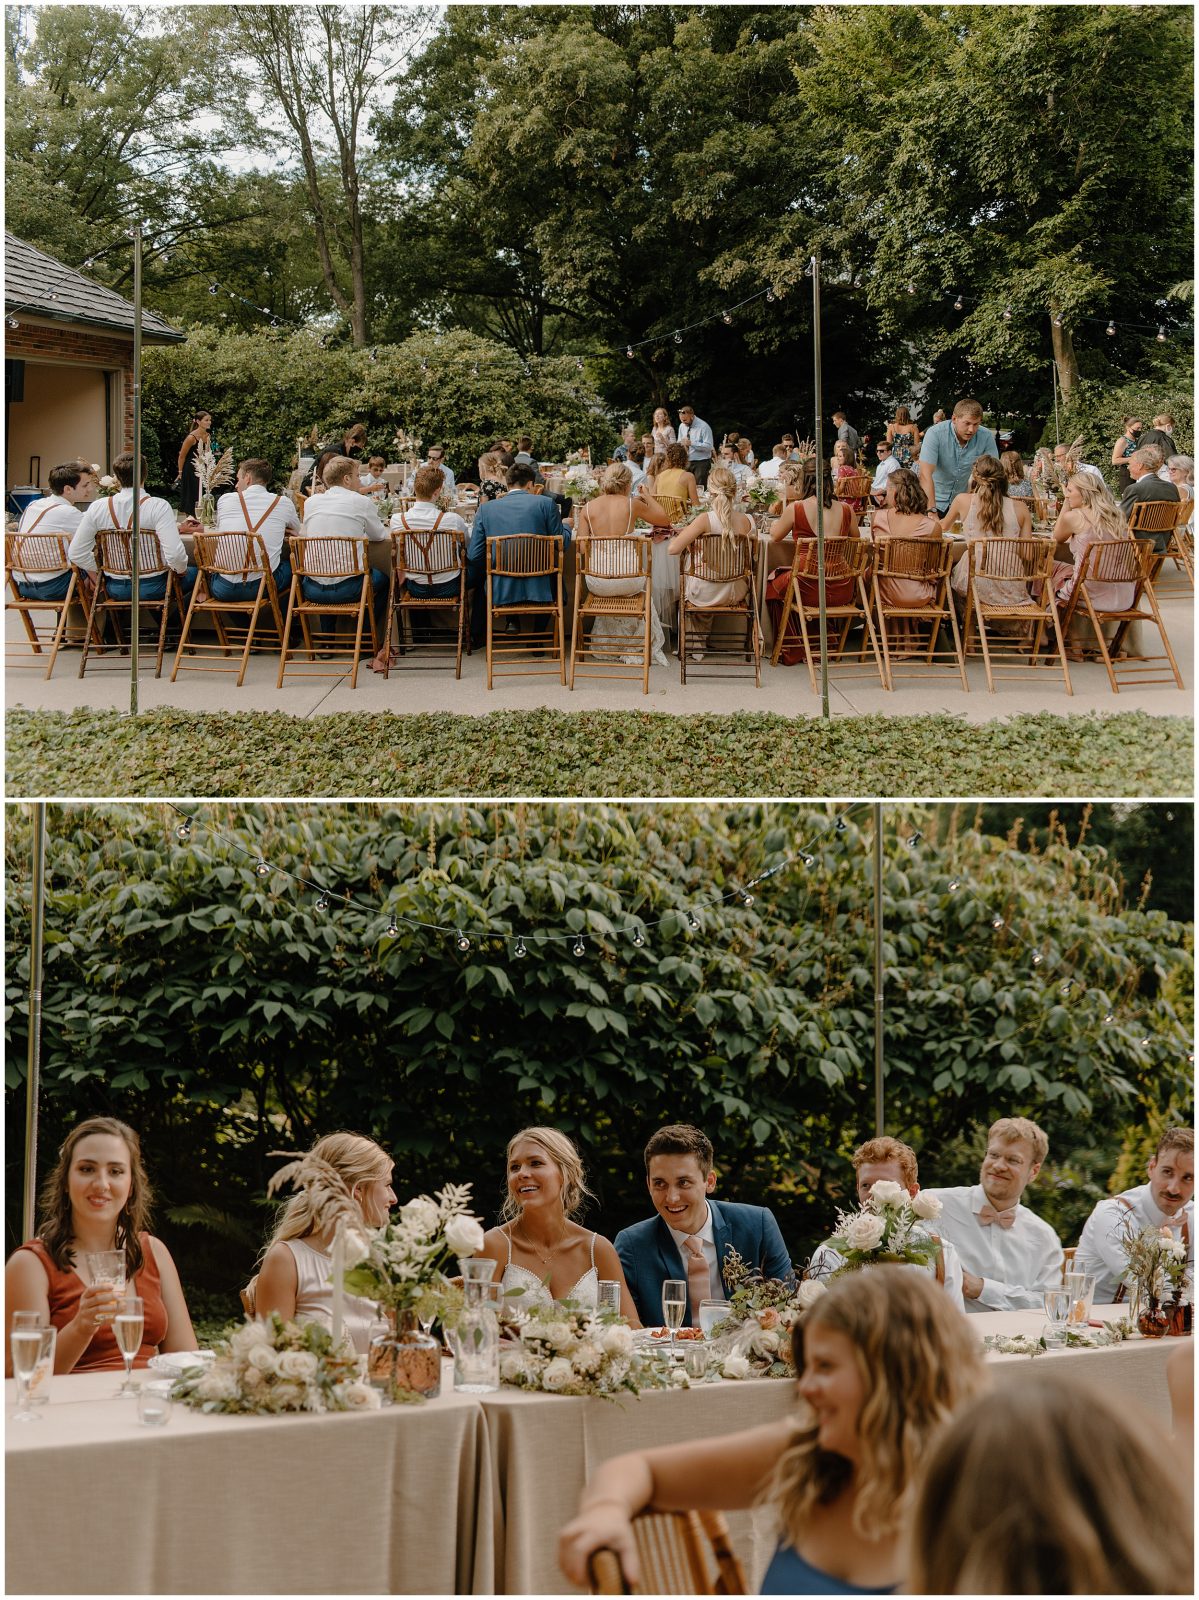 Backyard Wedding Reception Ideas